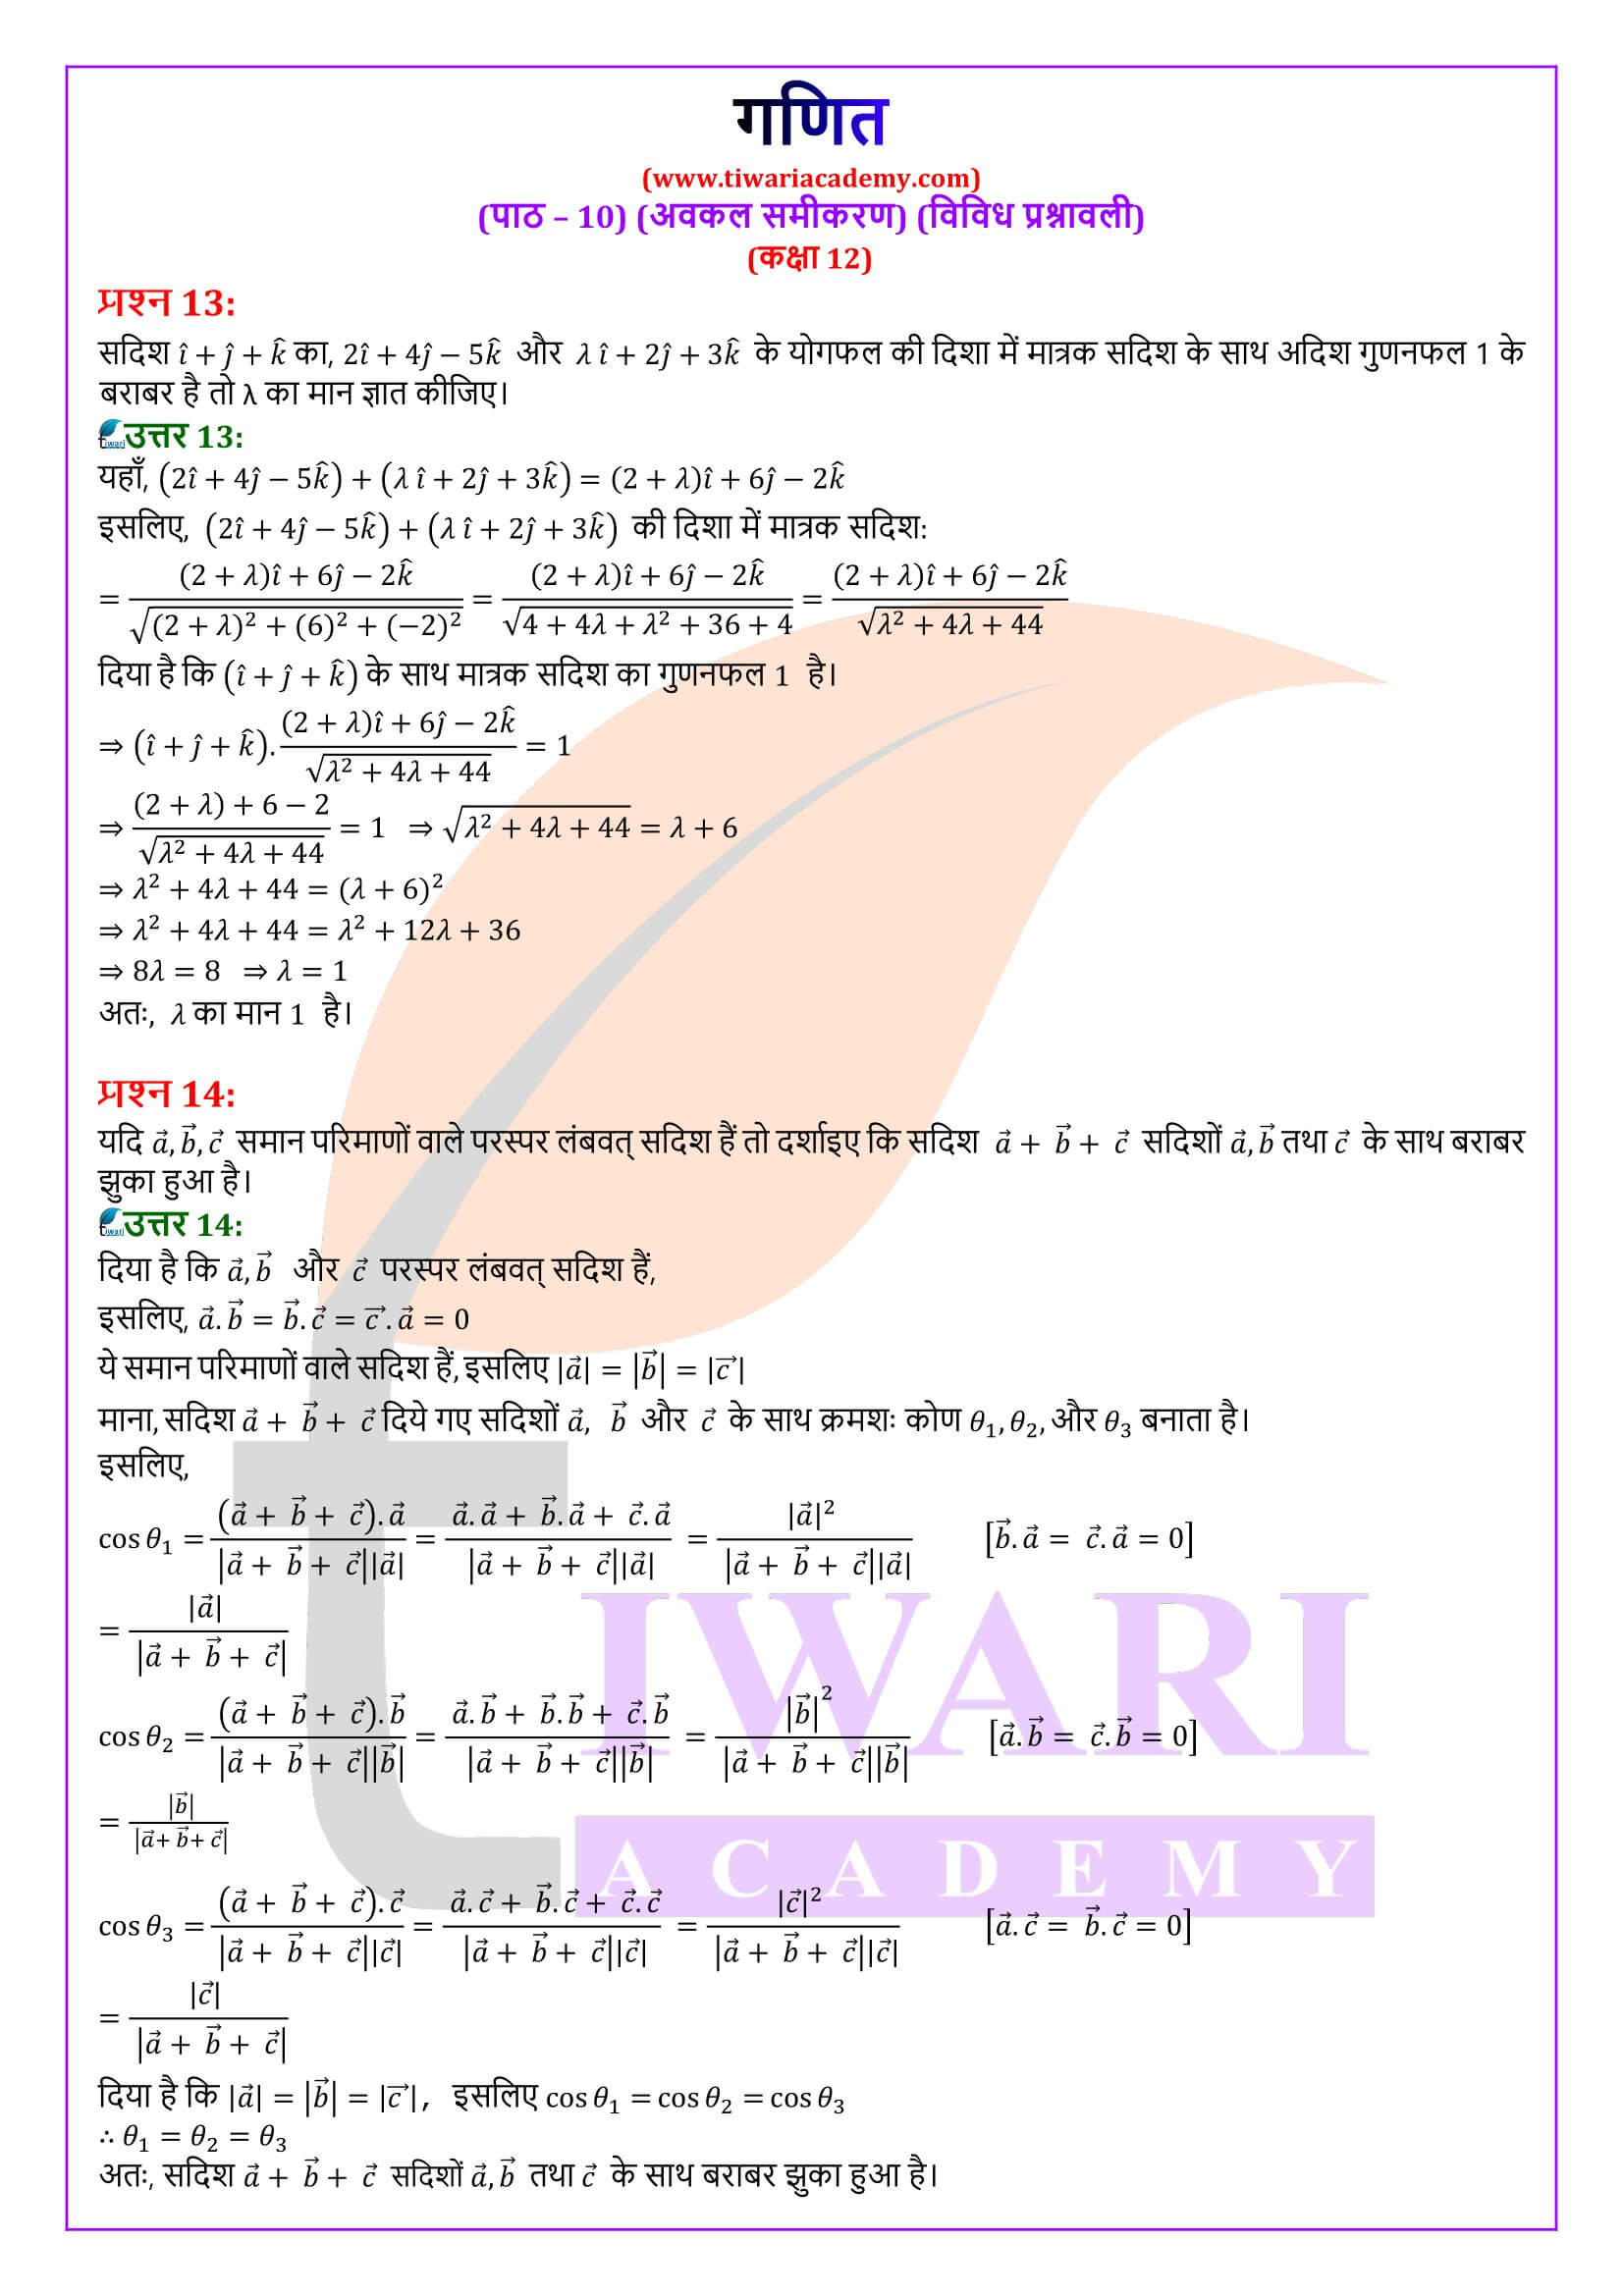 कक्षा 12 गणित अध्याय 10 विविध प्रश्नावली के हल हिंदी में